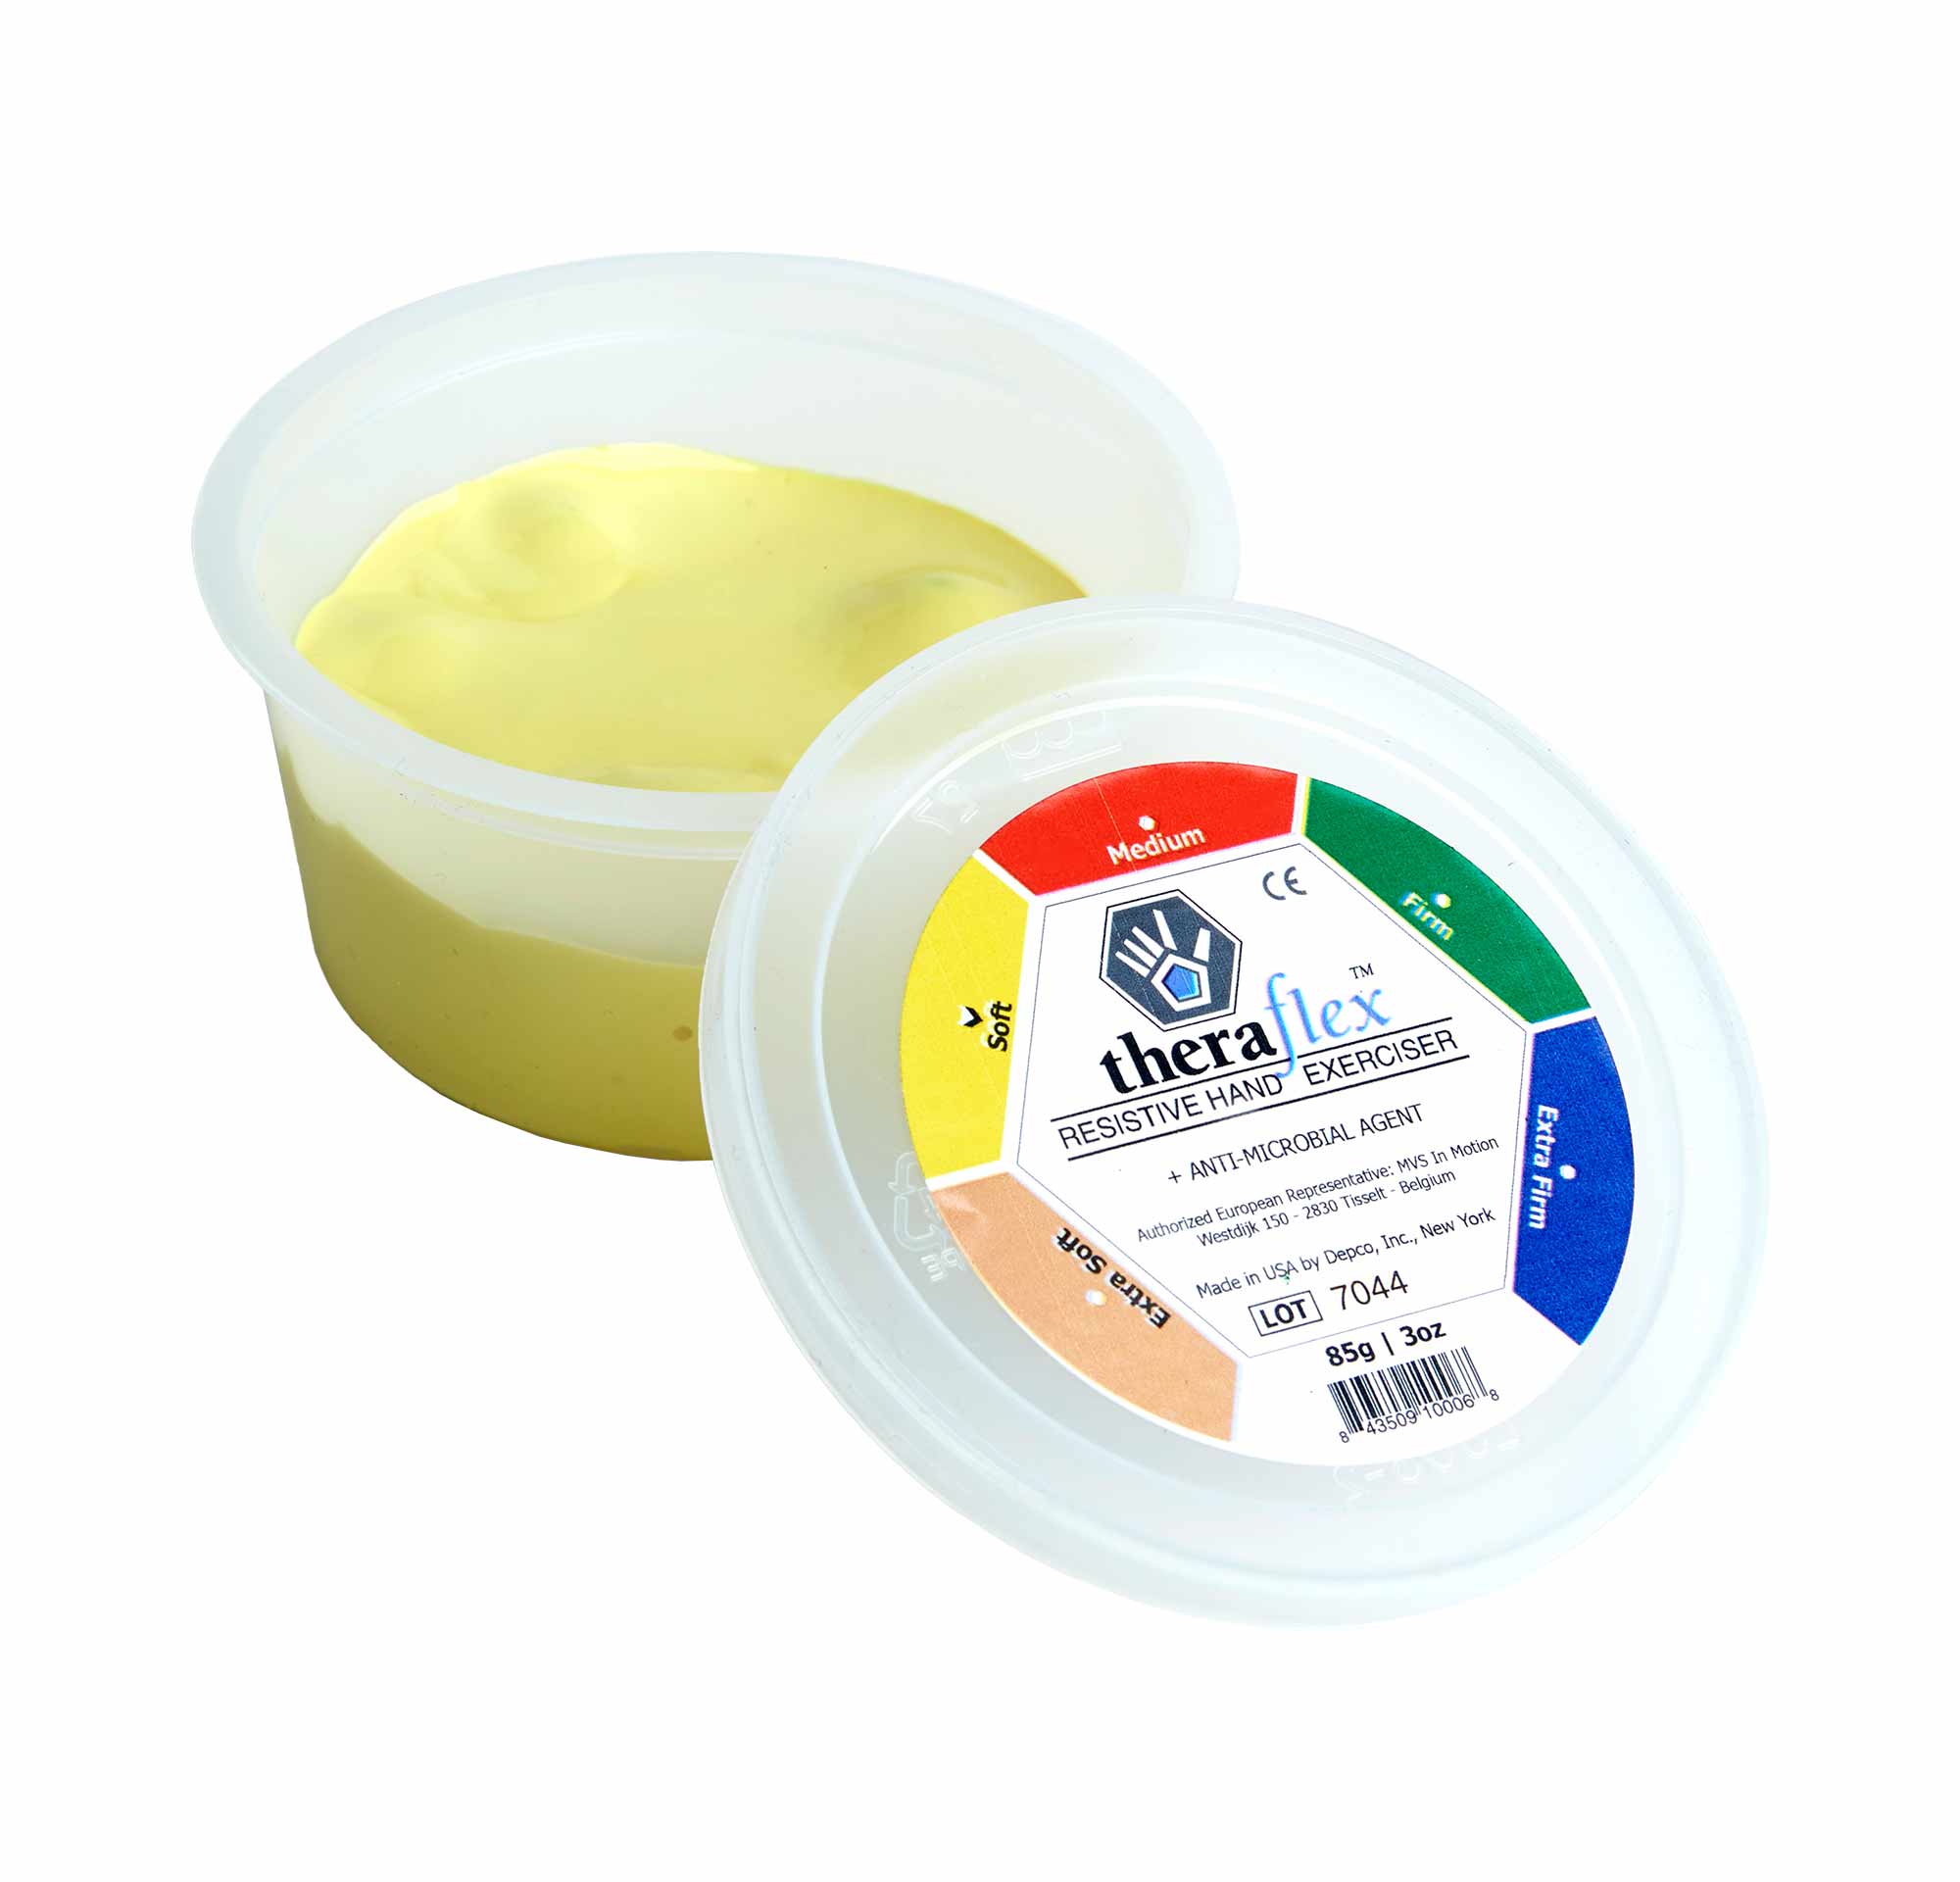 Theraflex Therapieknetmasse soft, gelb 85 g